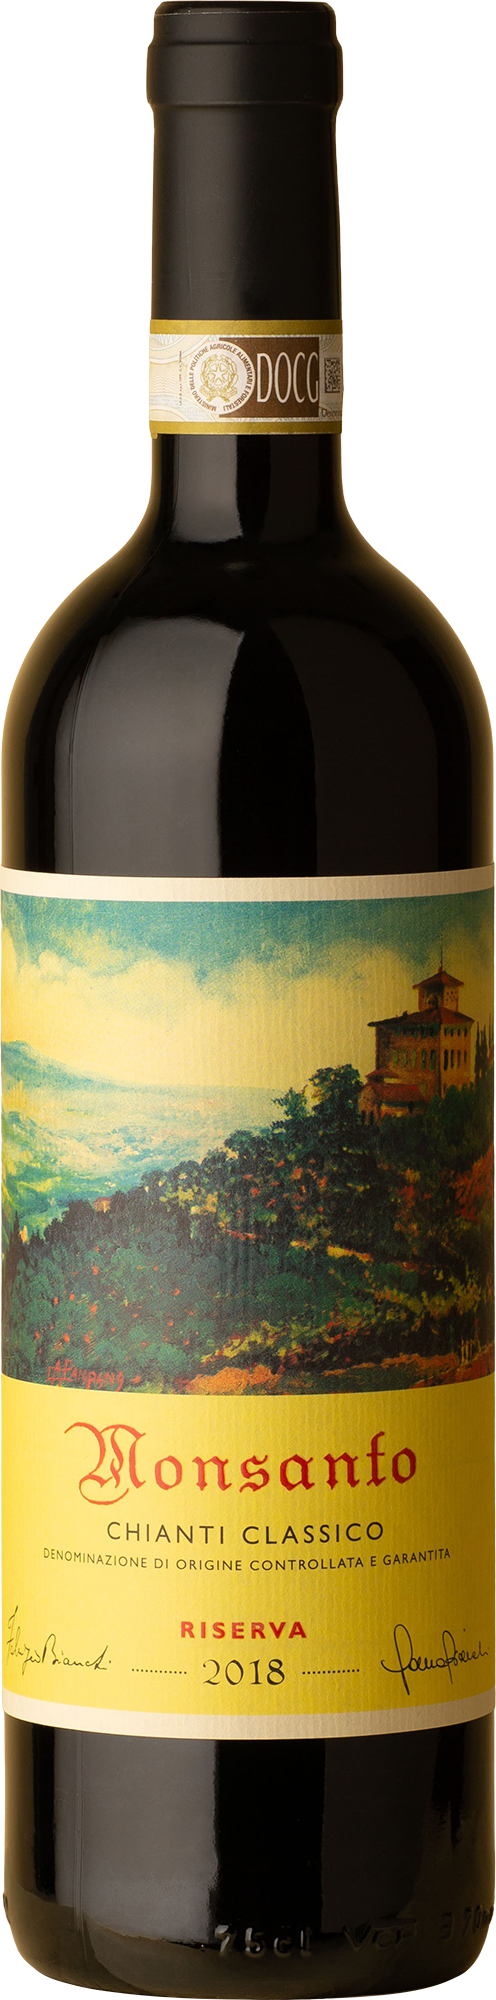 Castello Monsanto - Chianti Classico Riserva Sangiovese 2018 Red Wine